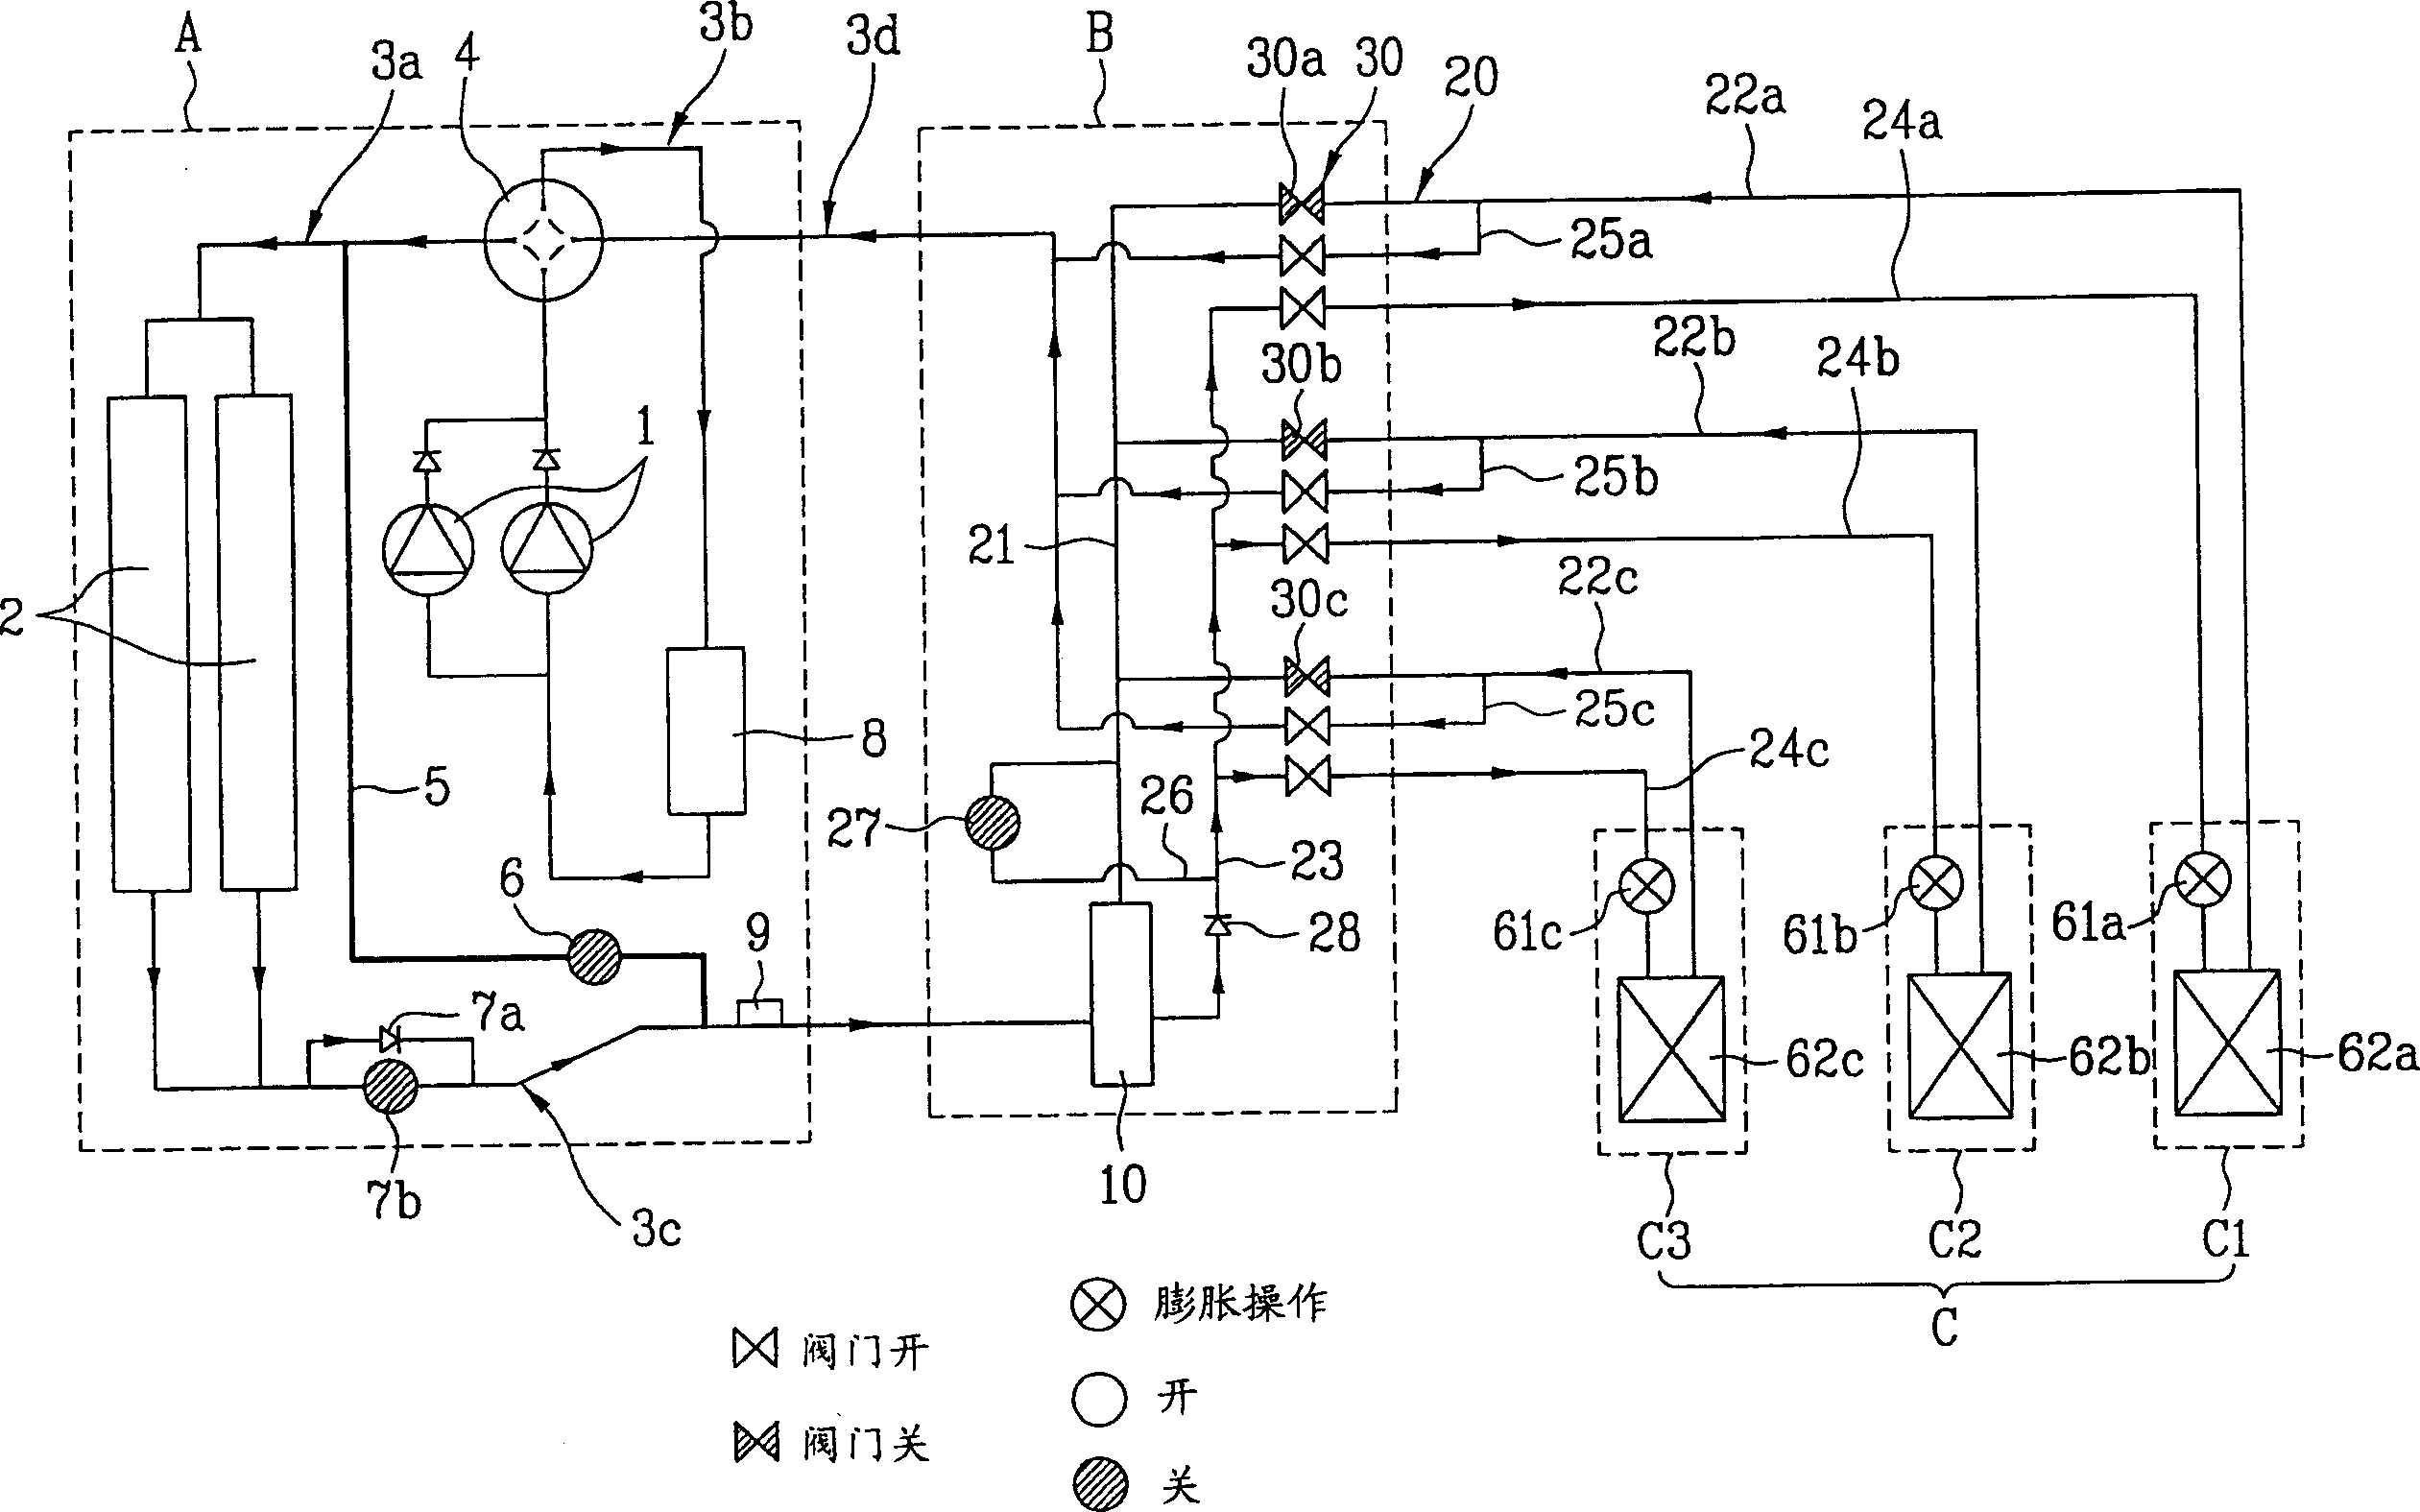 Multe-unit air conditioner and control method